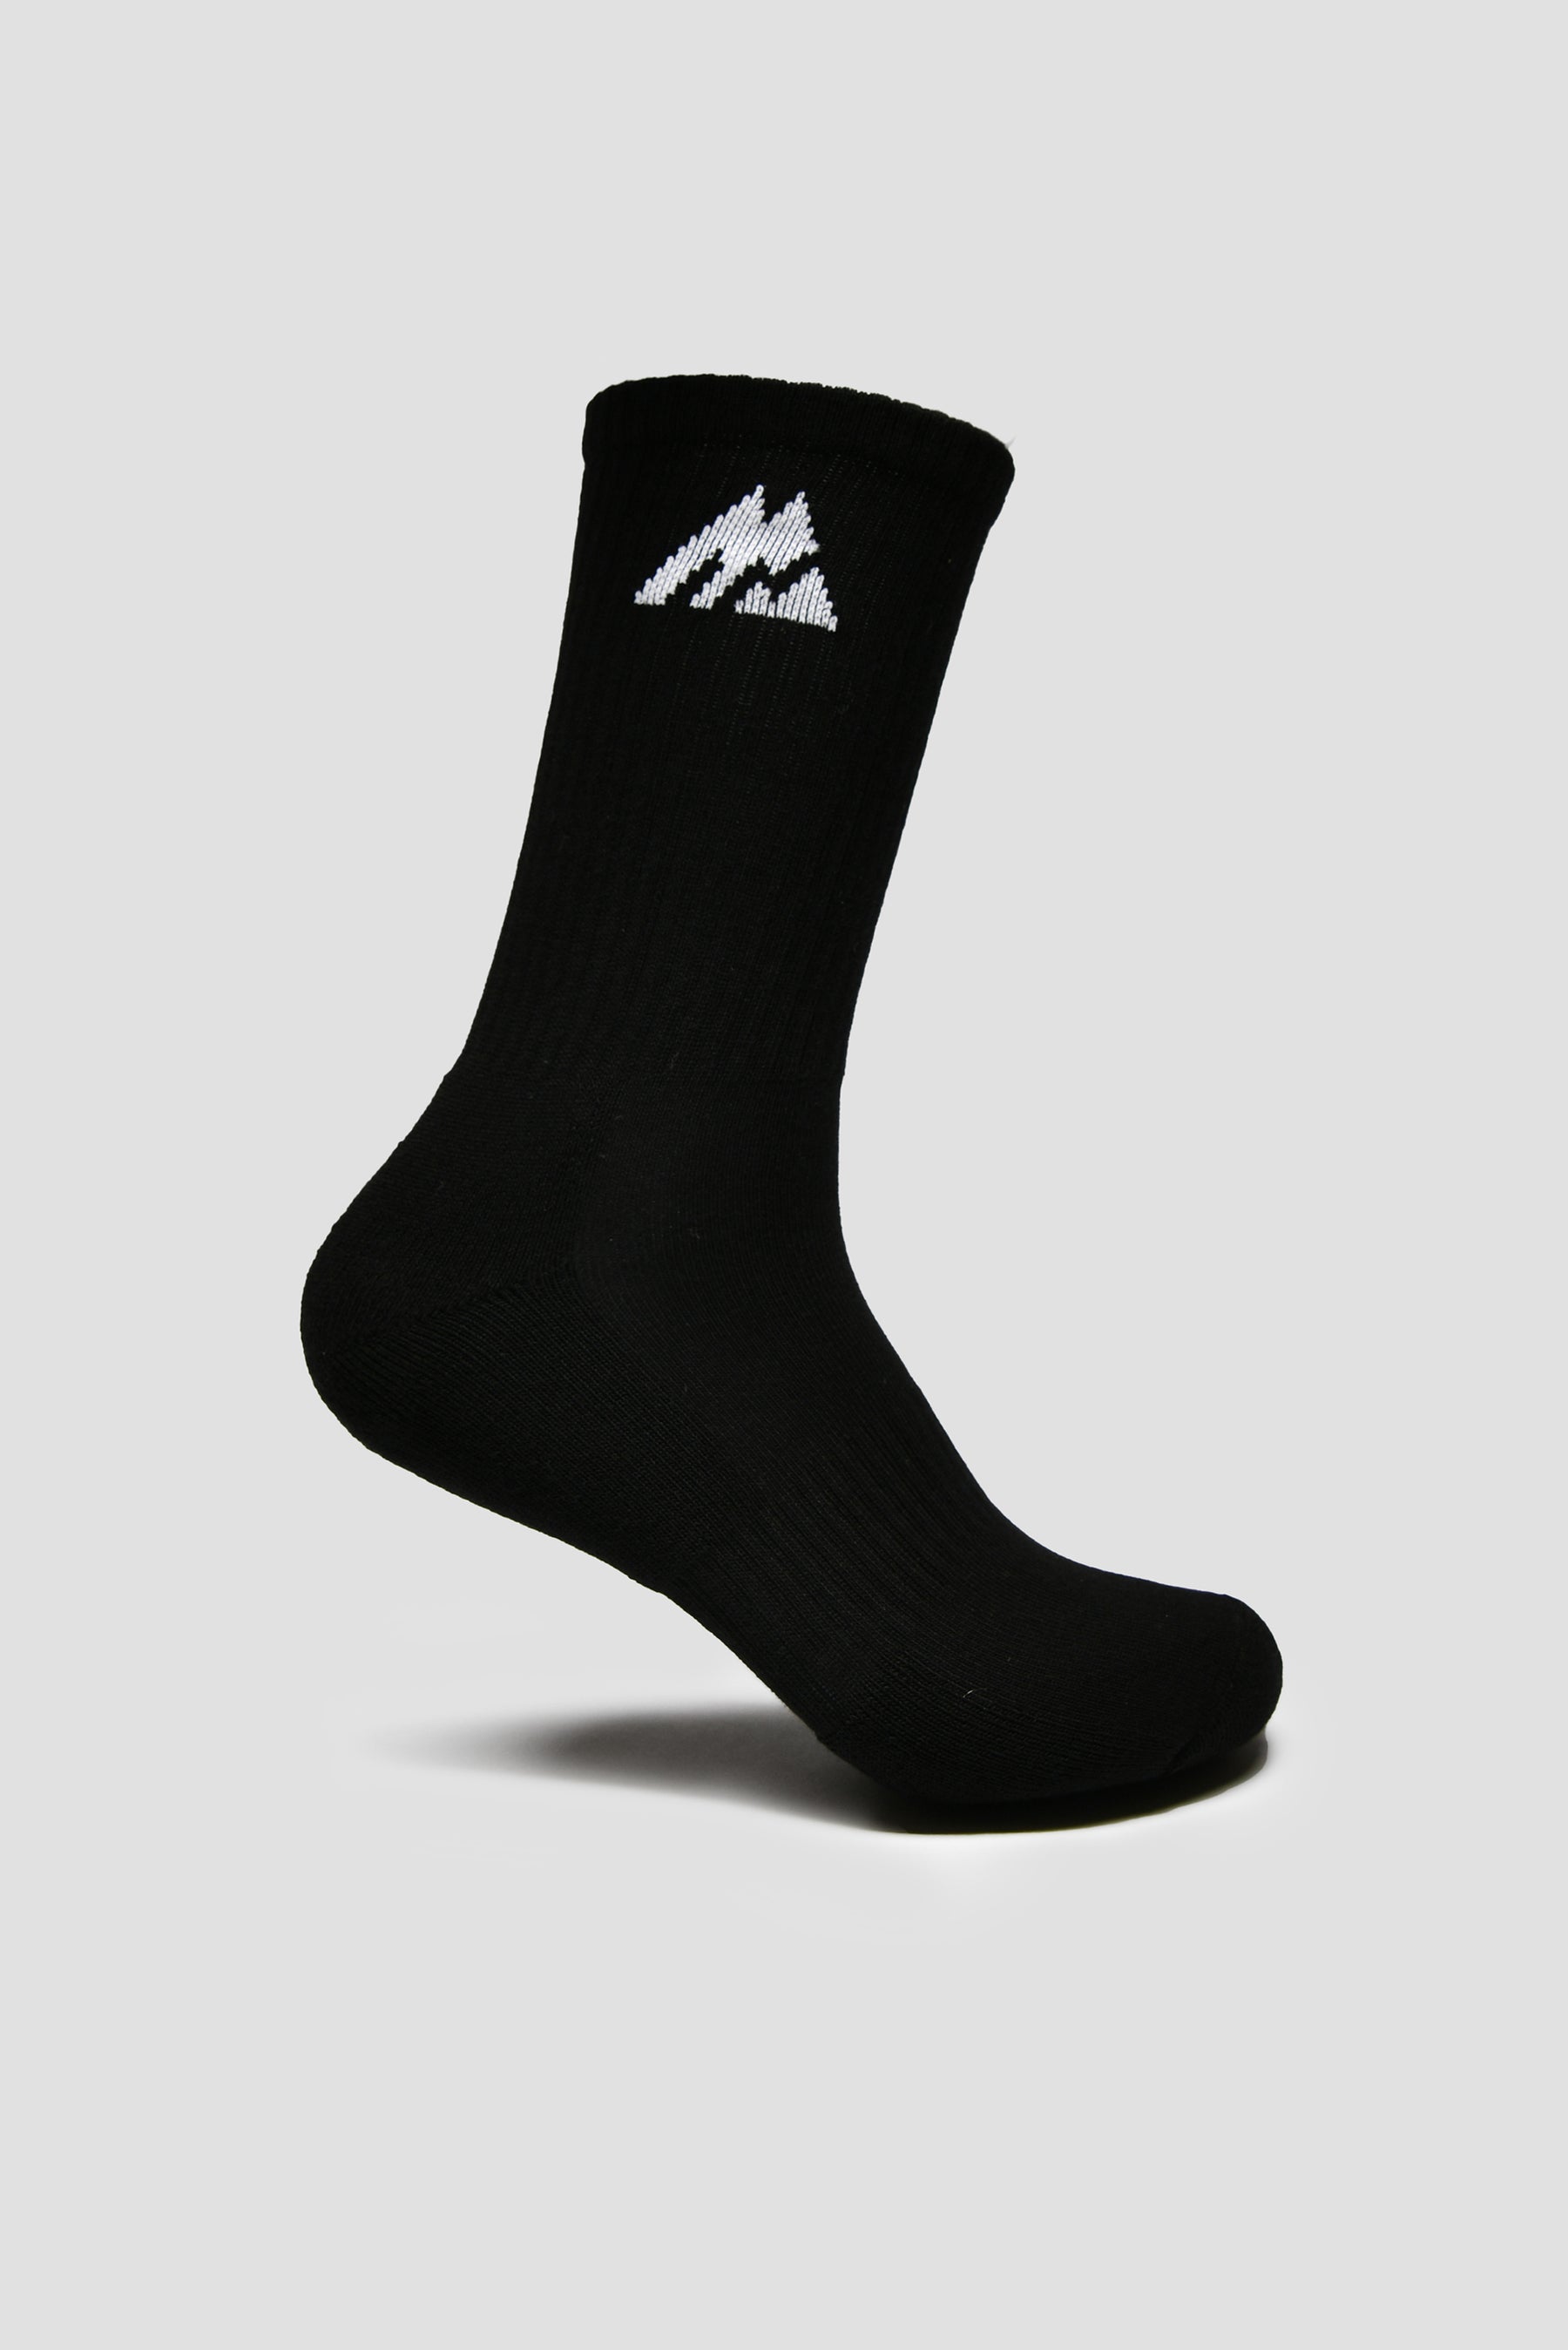 MTX Performance Socks 3 Pack - Black/White